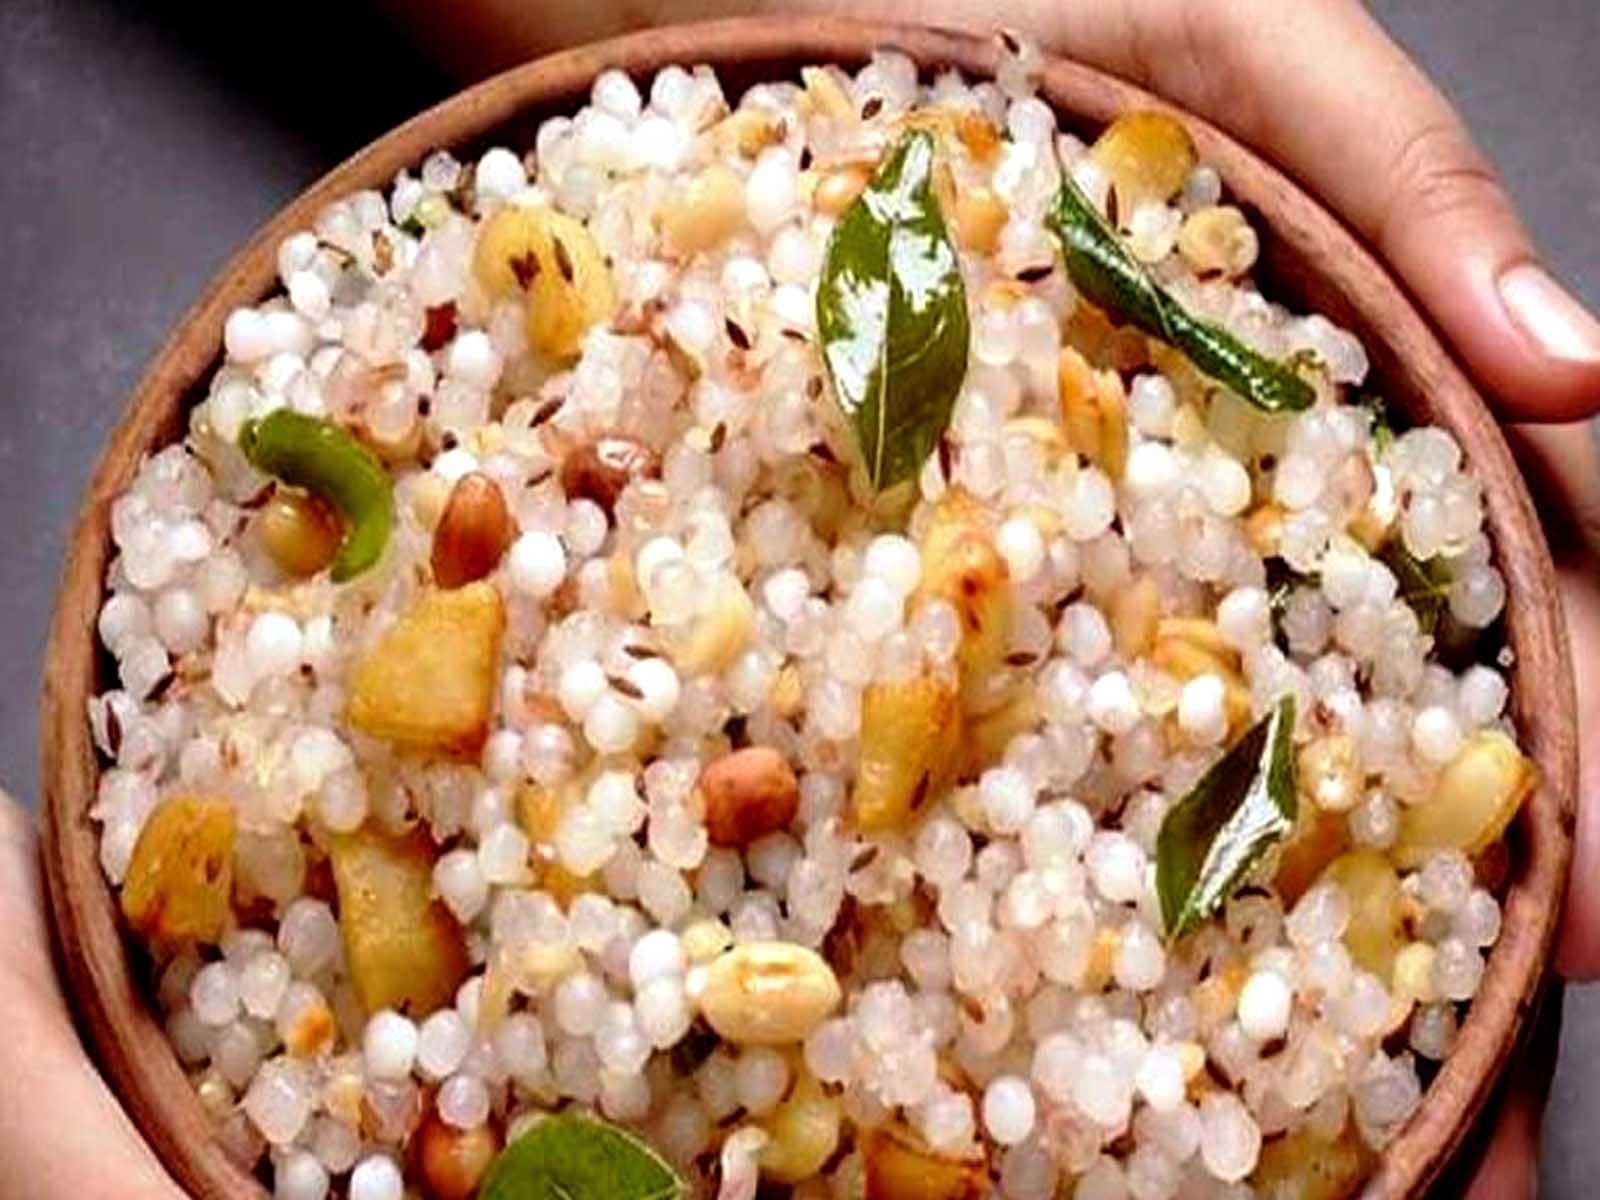 Navratri Special Food: ਨਵਰਾਤਰੀ ਵਰਤ ਦੌਰਾਨ ਬਣਾਓ ਸਾਬੂਦਾਣਾ ਖਿਚੜੀ, ਸਿਹਤ ਨੂੰ ਦੇਵੇਗੀ ਭਰਪੂਰ ਊਰਜਾ
